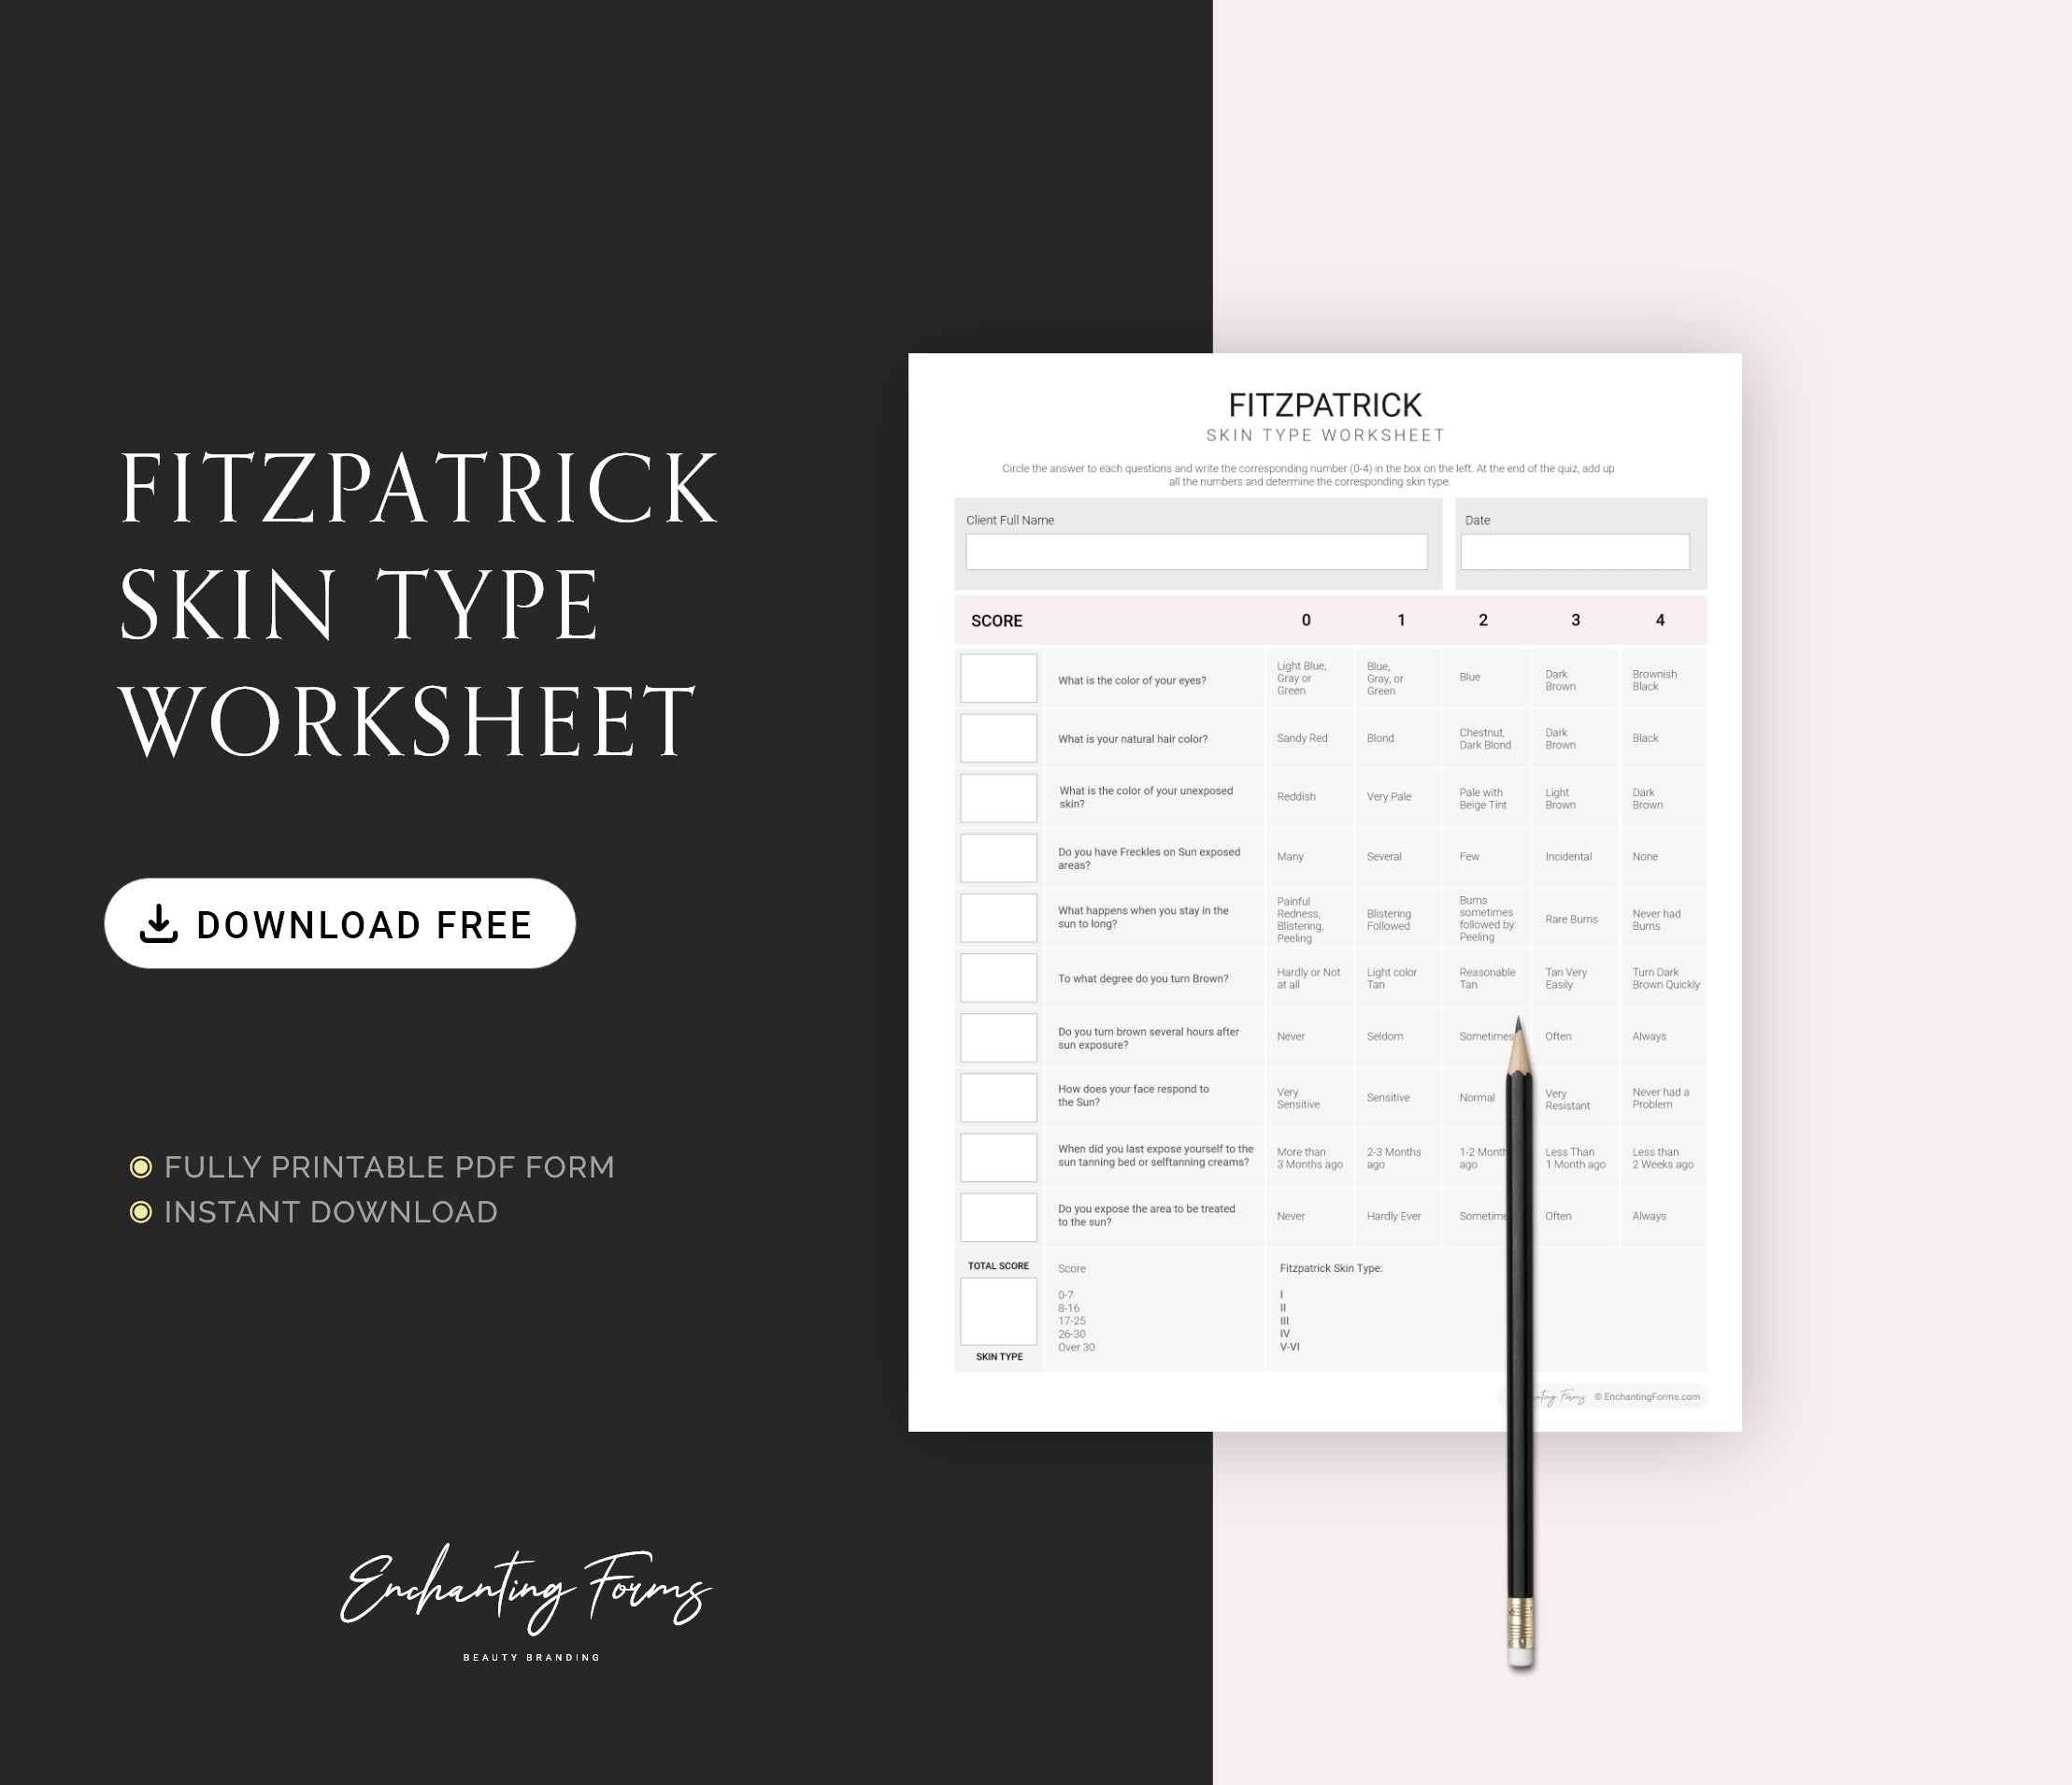 Fitzpatrick Skin Type Worksheet- Free Download